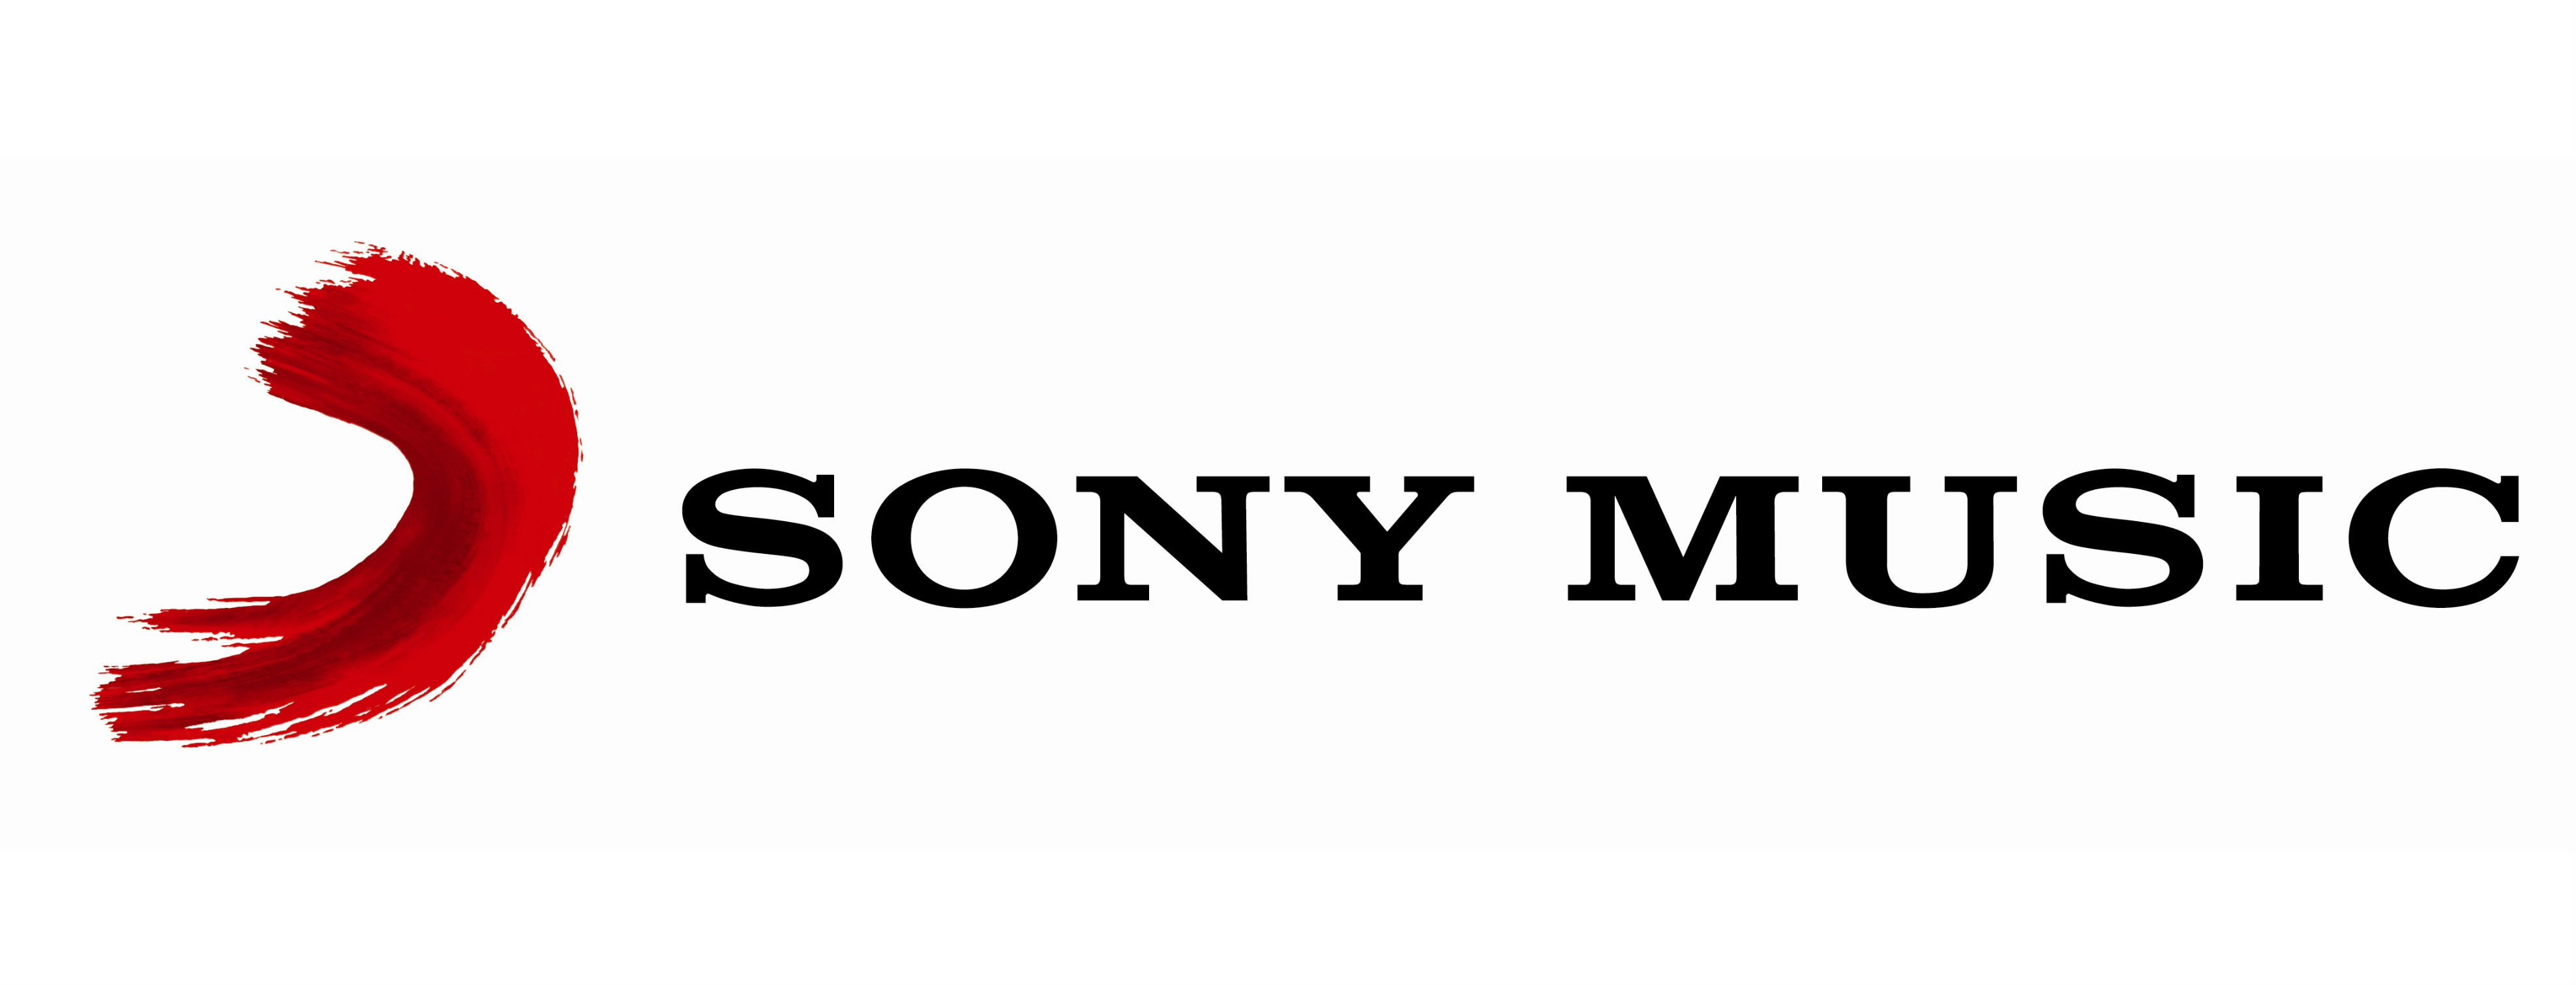 Sony Music compraría la mayoría de las acciones de EMI. Cusica Plus.